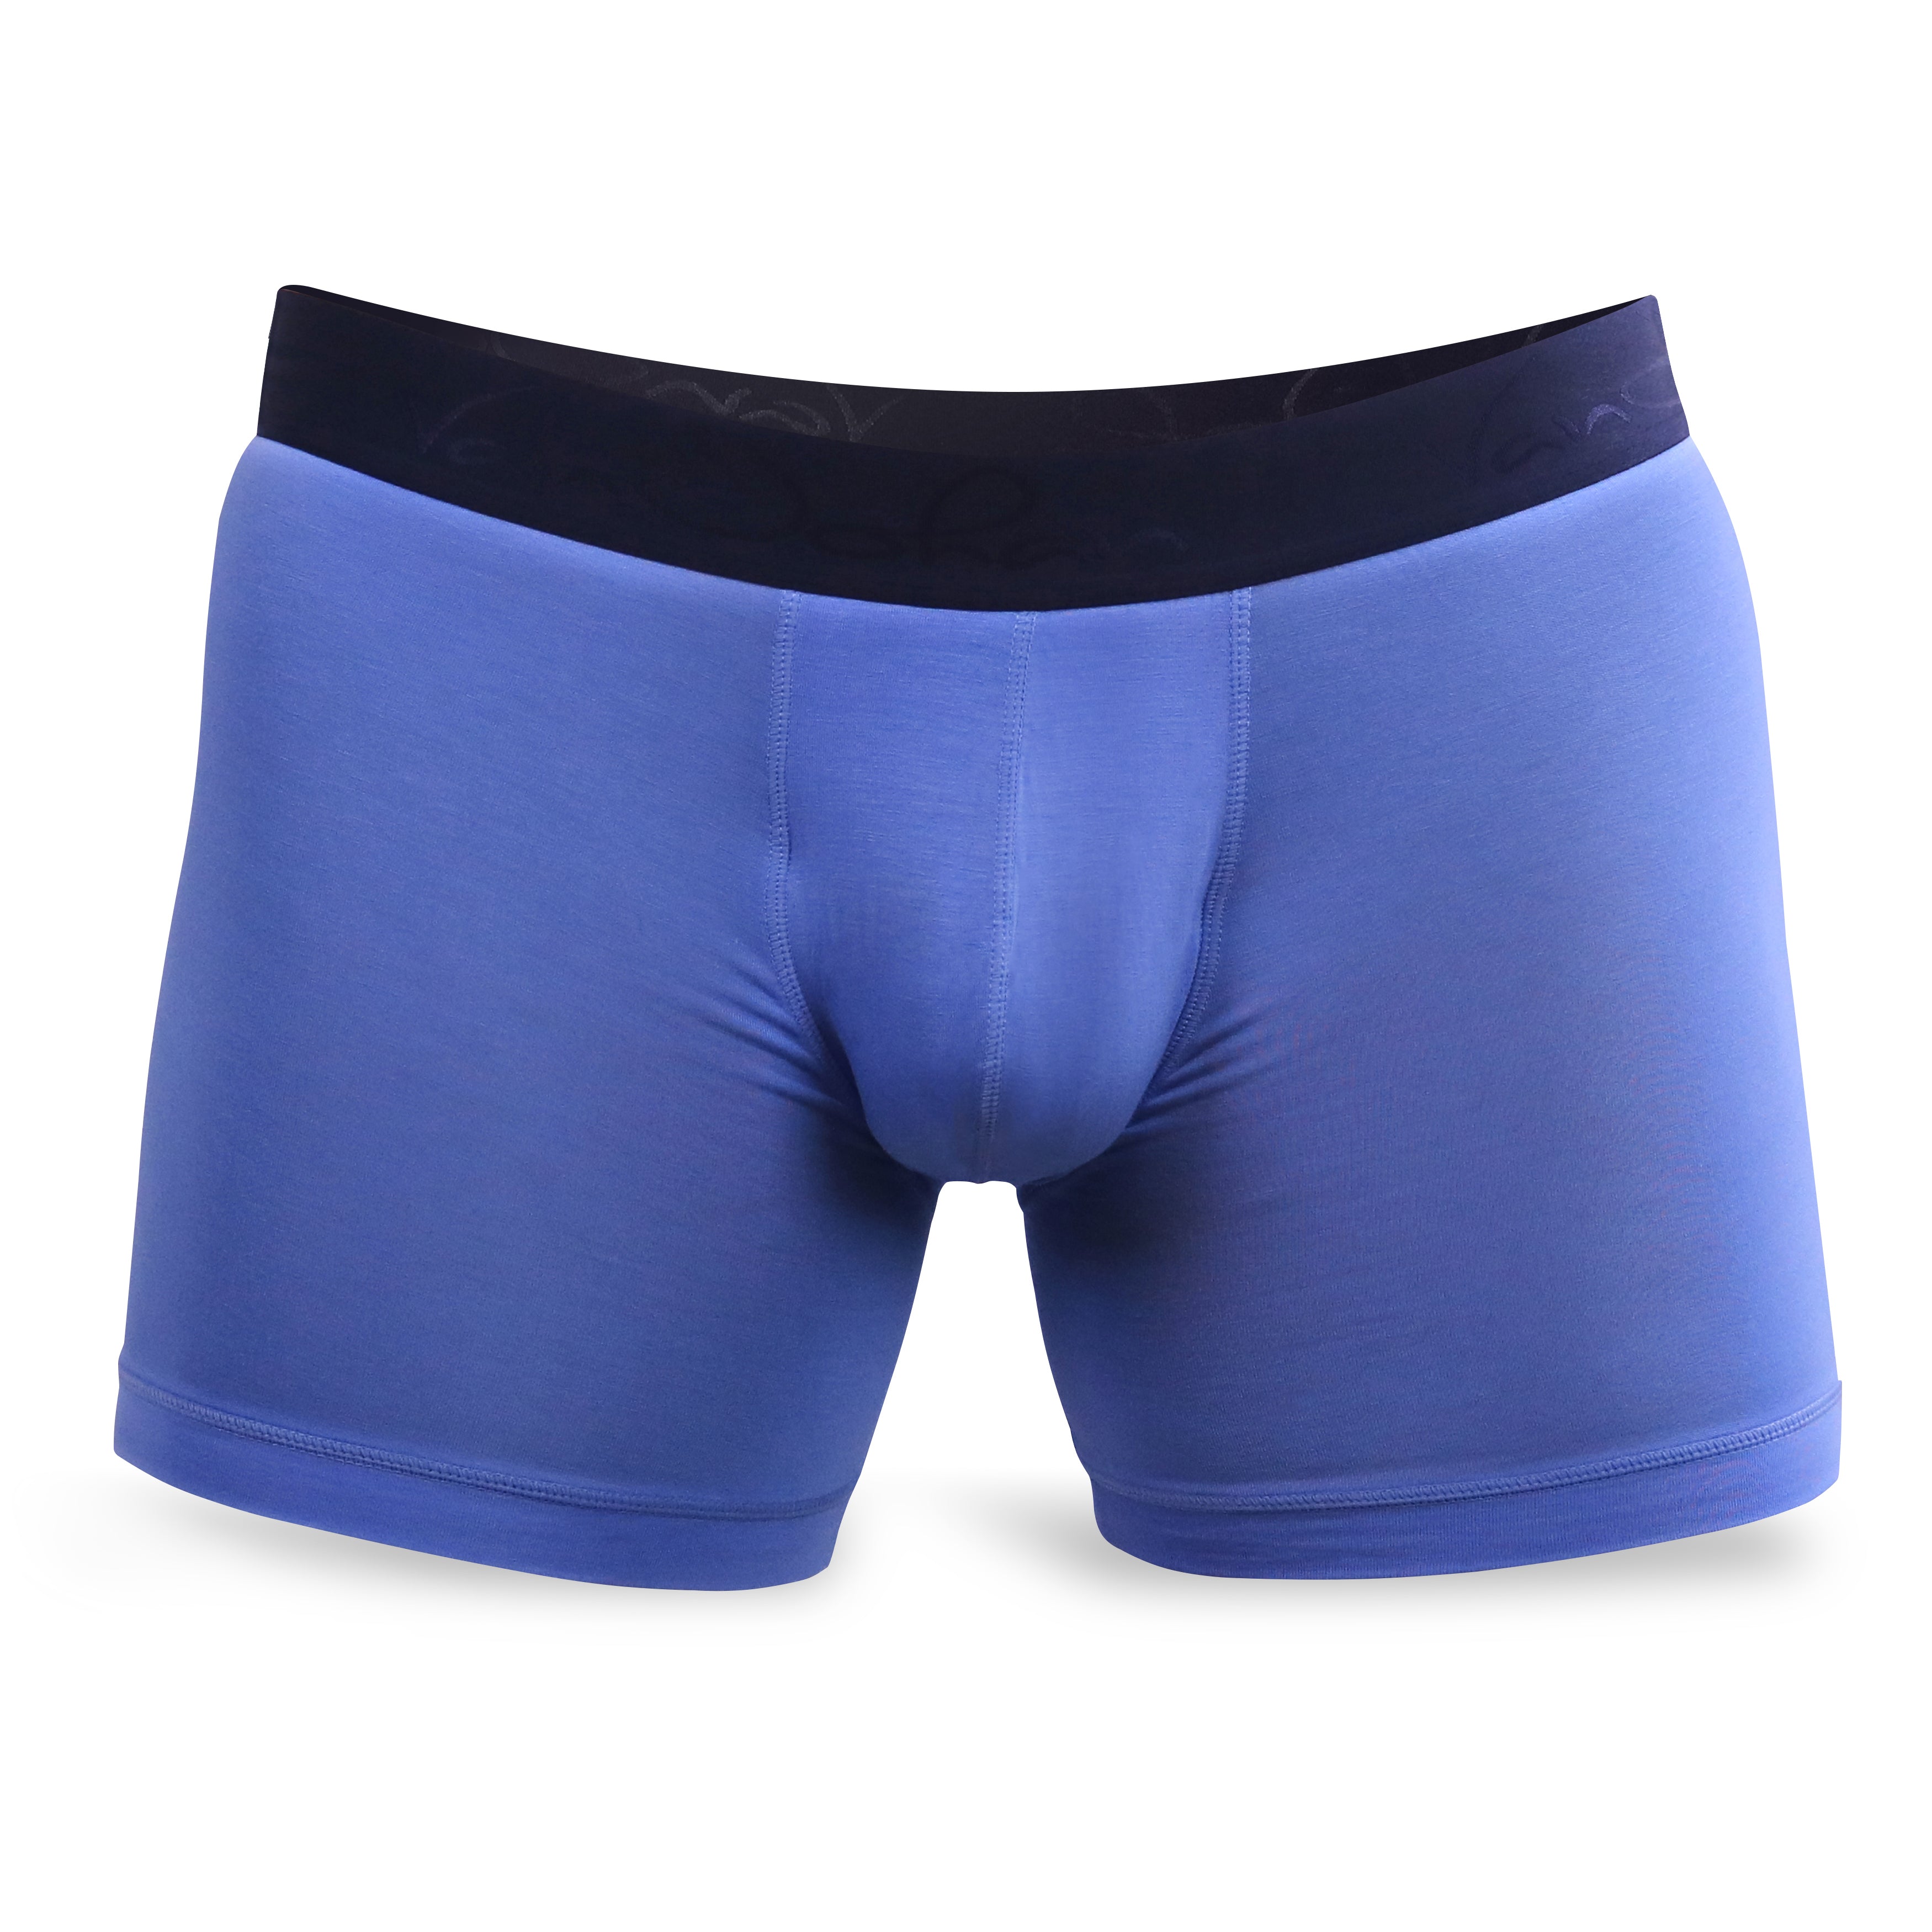 Marina Blue Boxer Briefs  Best Mens Underwear to Prevent Chafing